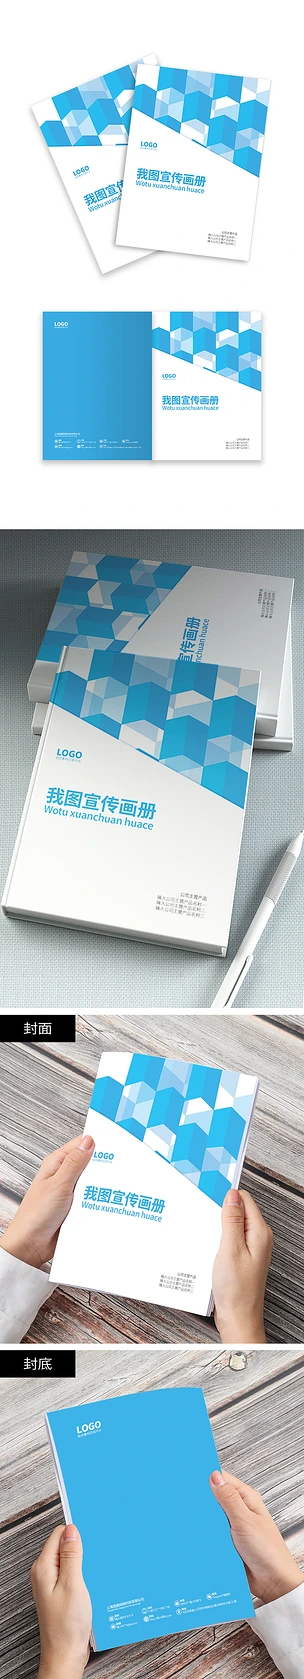 天蓝色商业医疗设备科技企业产品画册封面